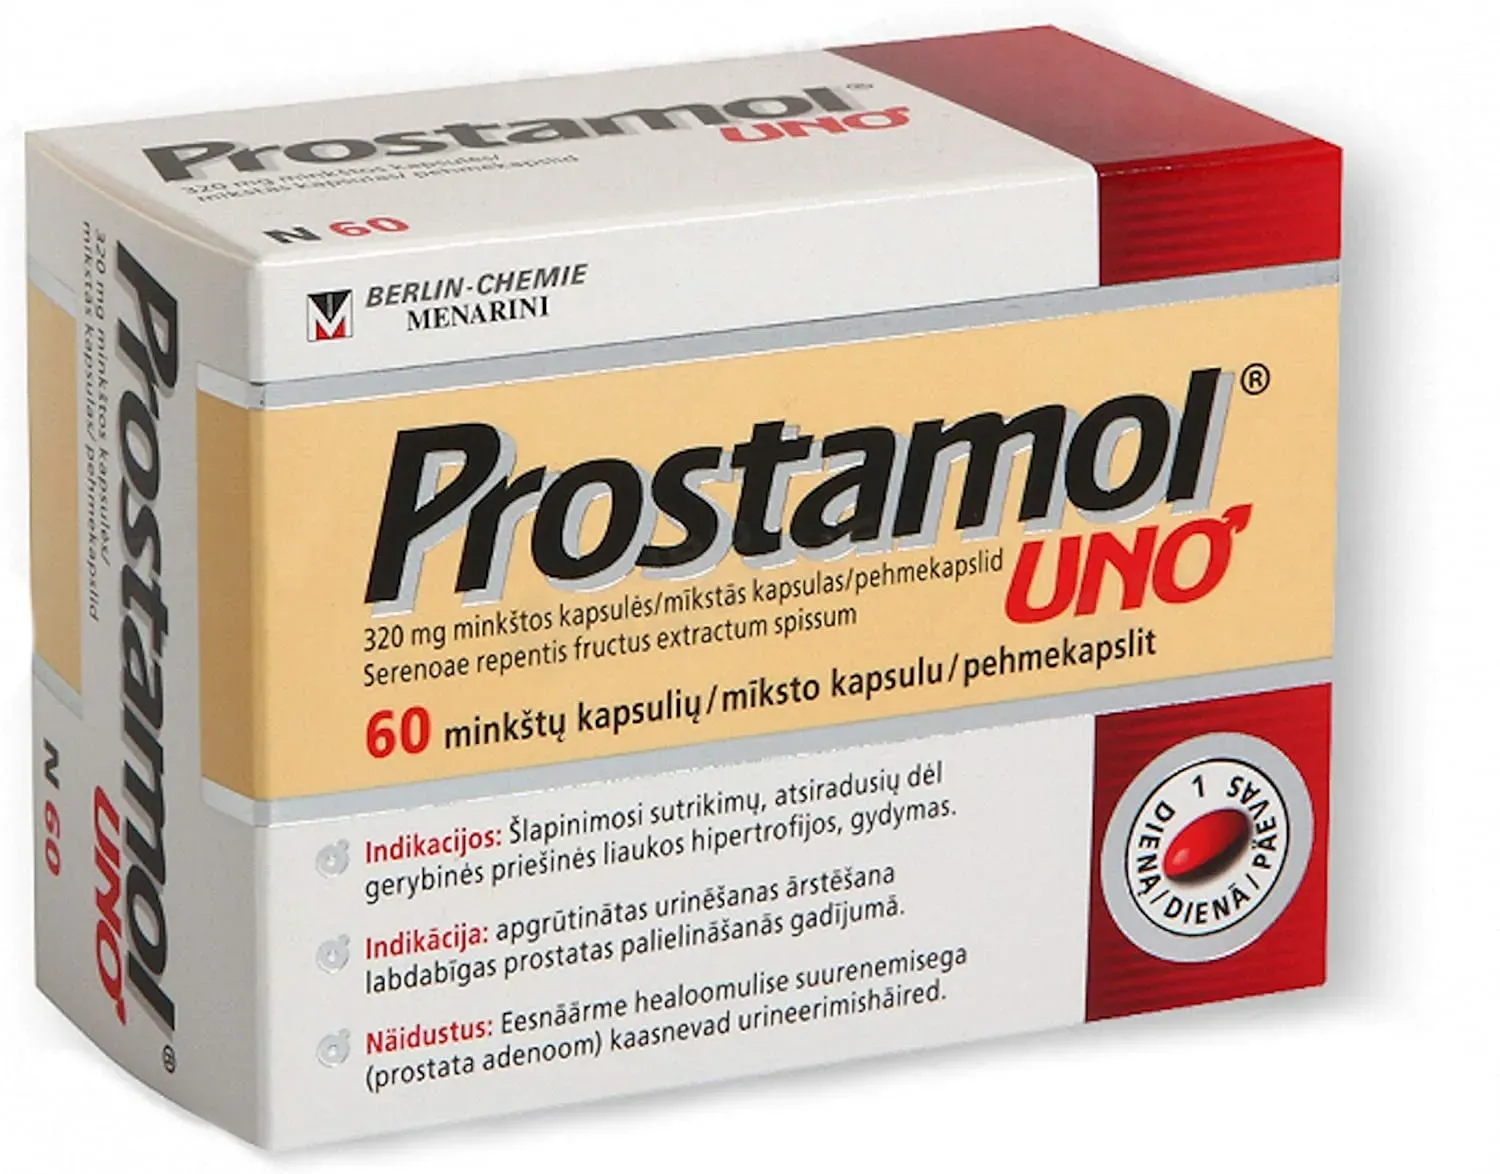 Prostasen : composizione solo ingredienti naturali.